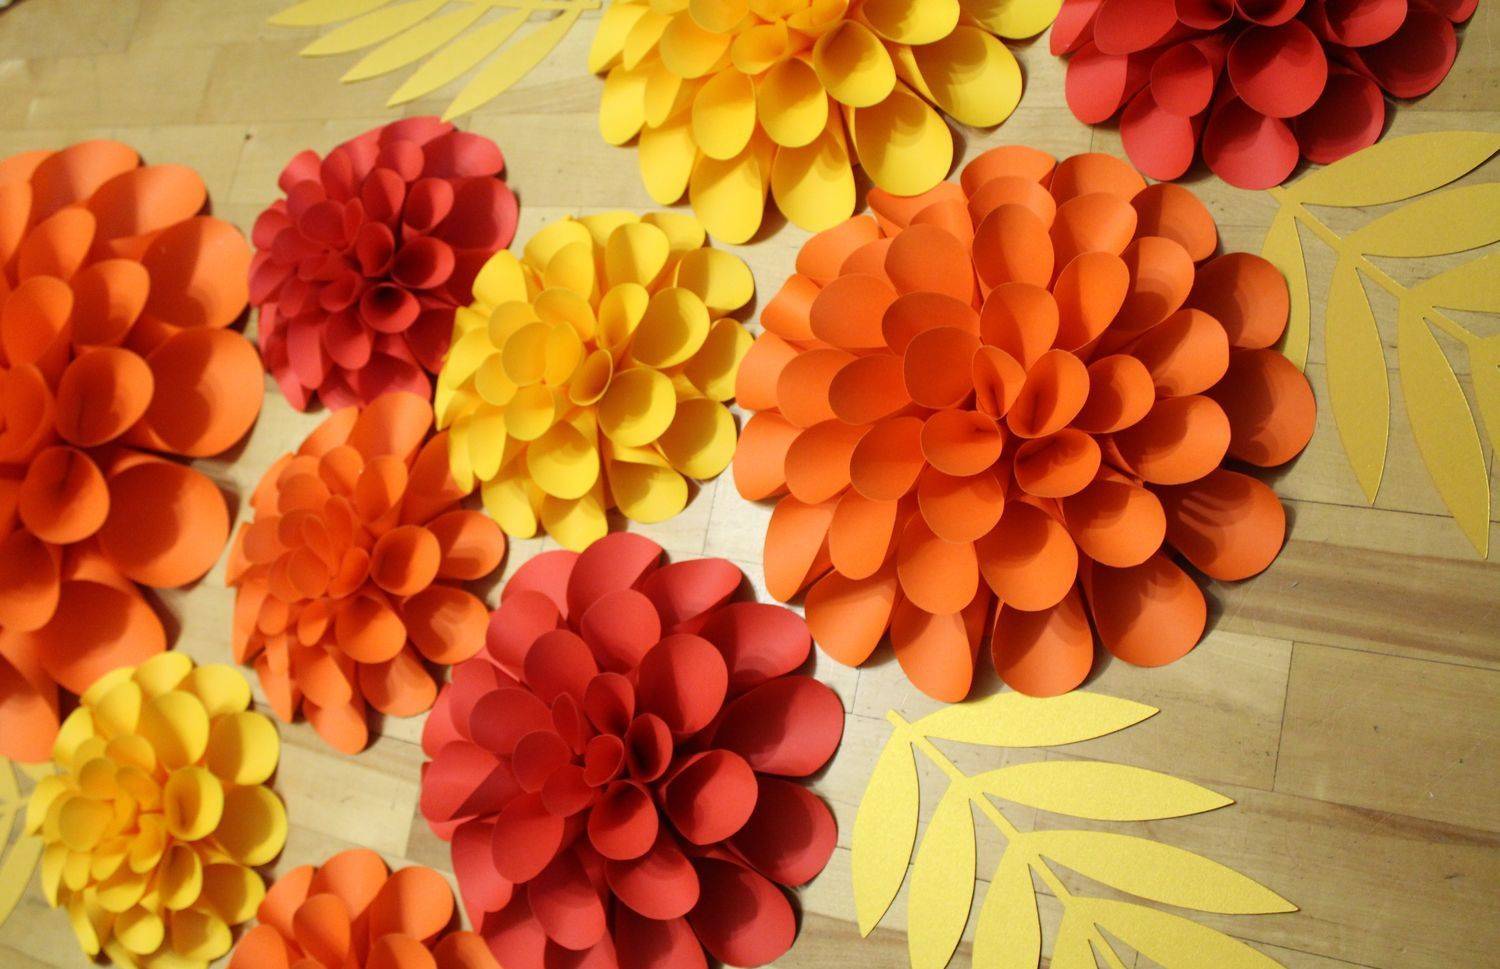 16 способов сделать цветы из гофрированной бумаги своими руками: 125+ фото, просто и сложно, большие и маленькие розы, пионы, тюльпаны, лилии и другие